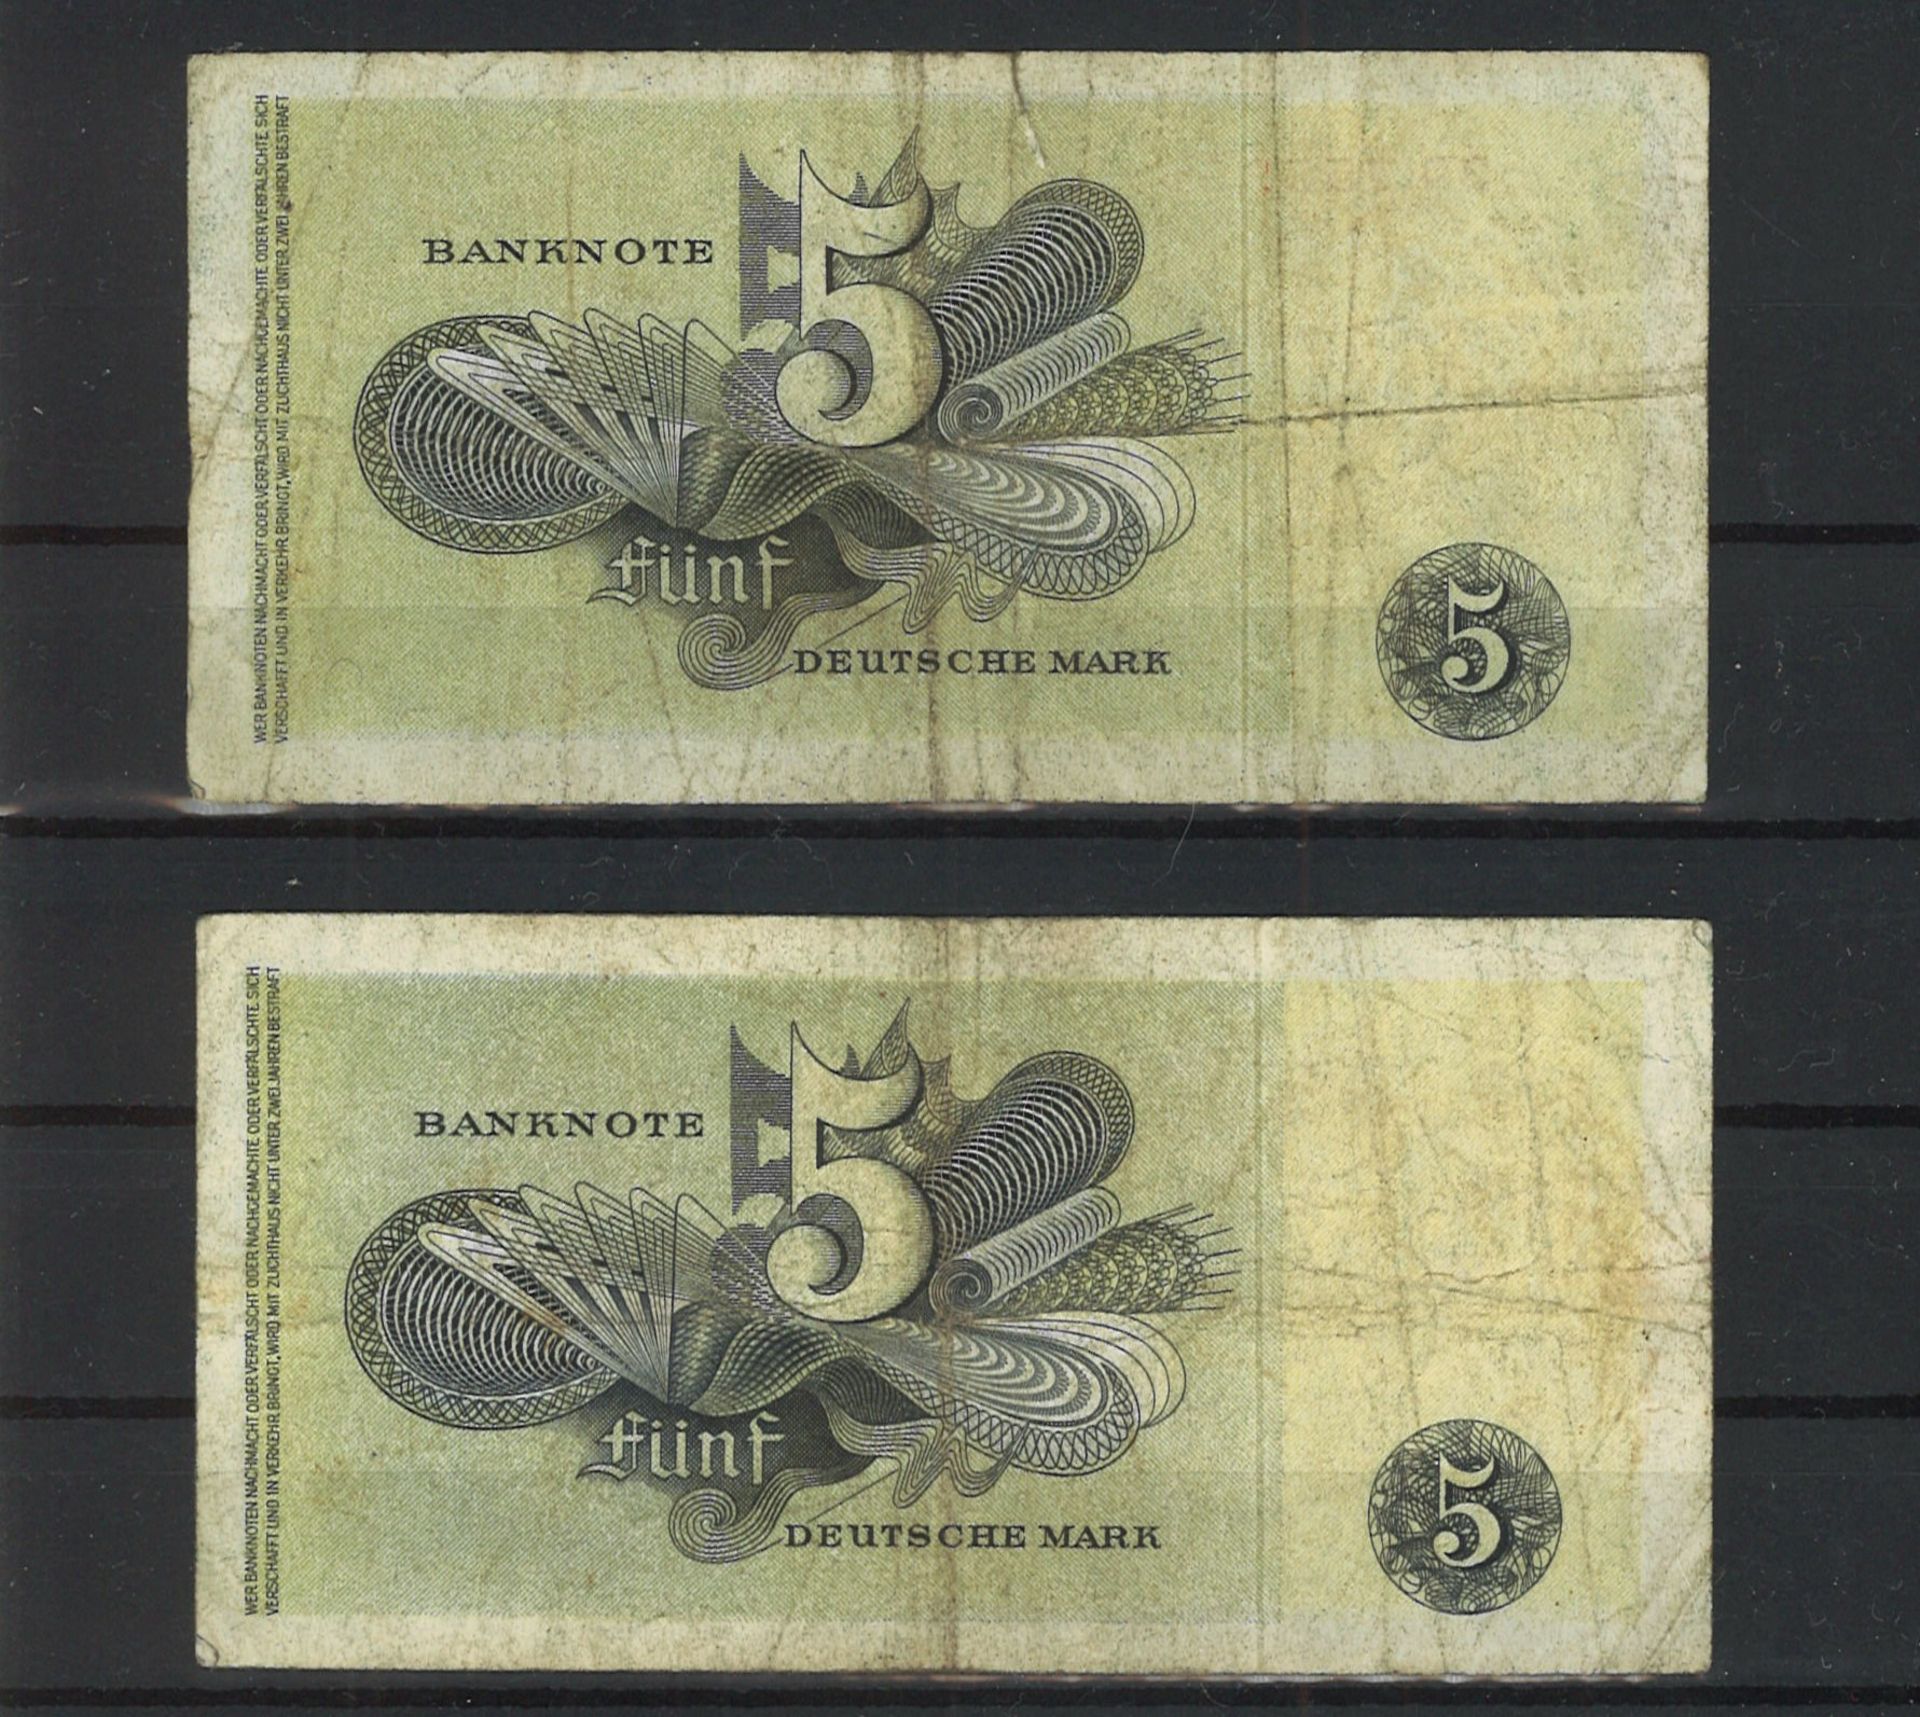 2x Bank deutscher Länder 5 Mark Scheine, 9.12.1948. Zustand stark gebraucht. Bitte besichtigen! - Image 2 of 2